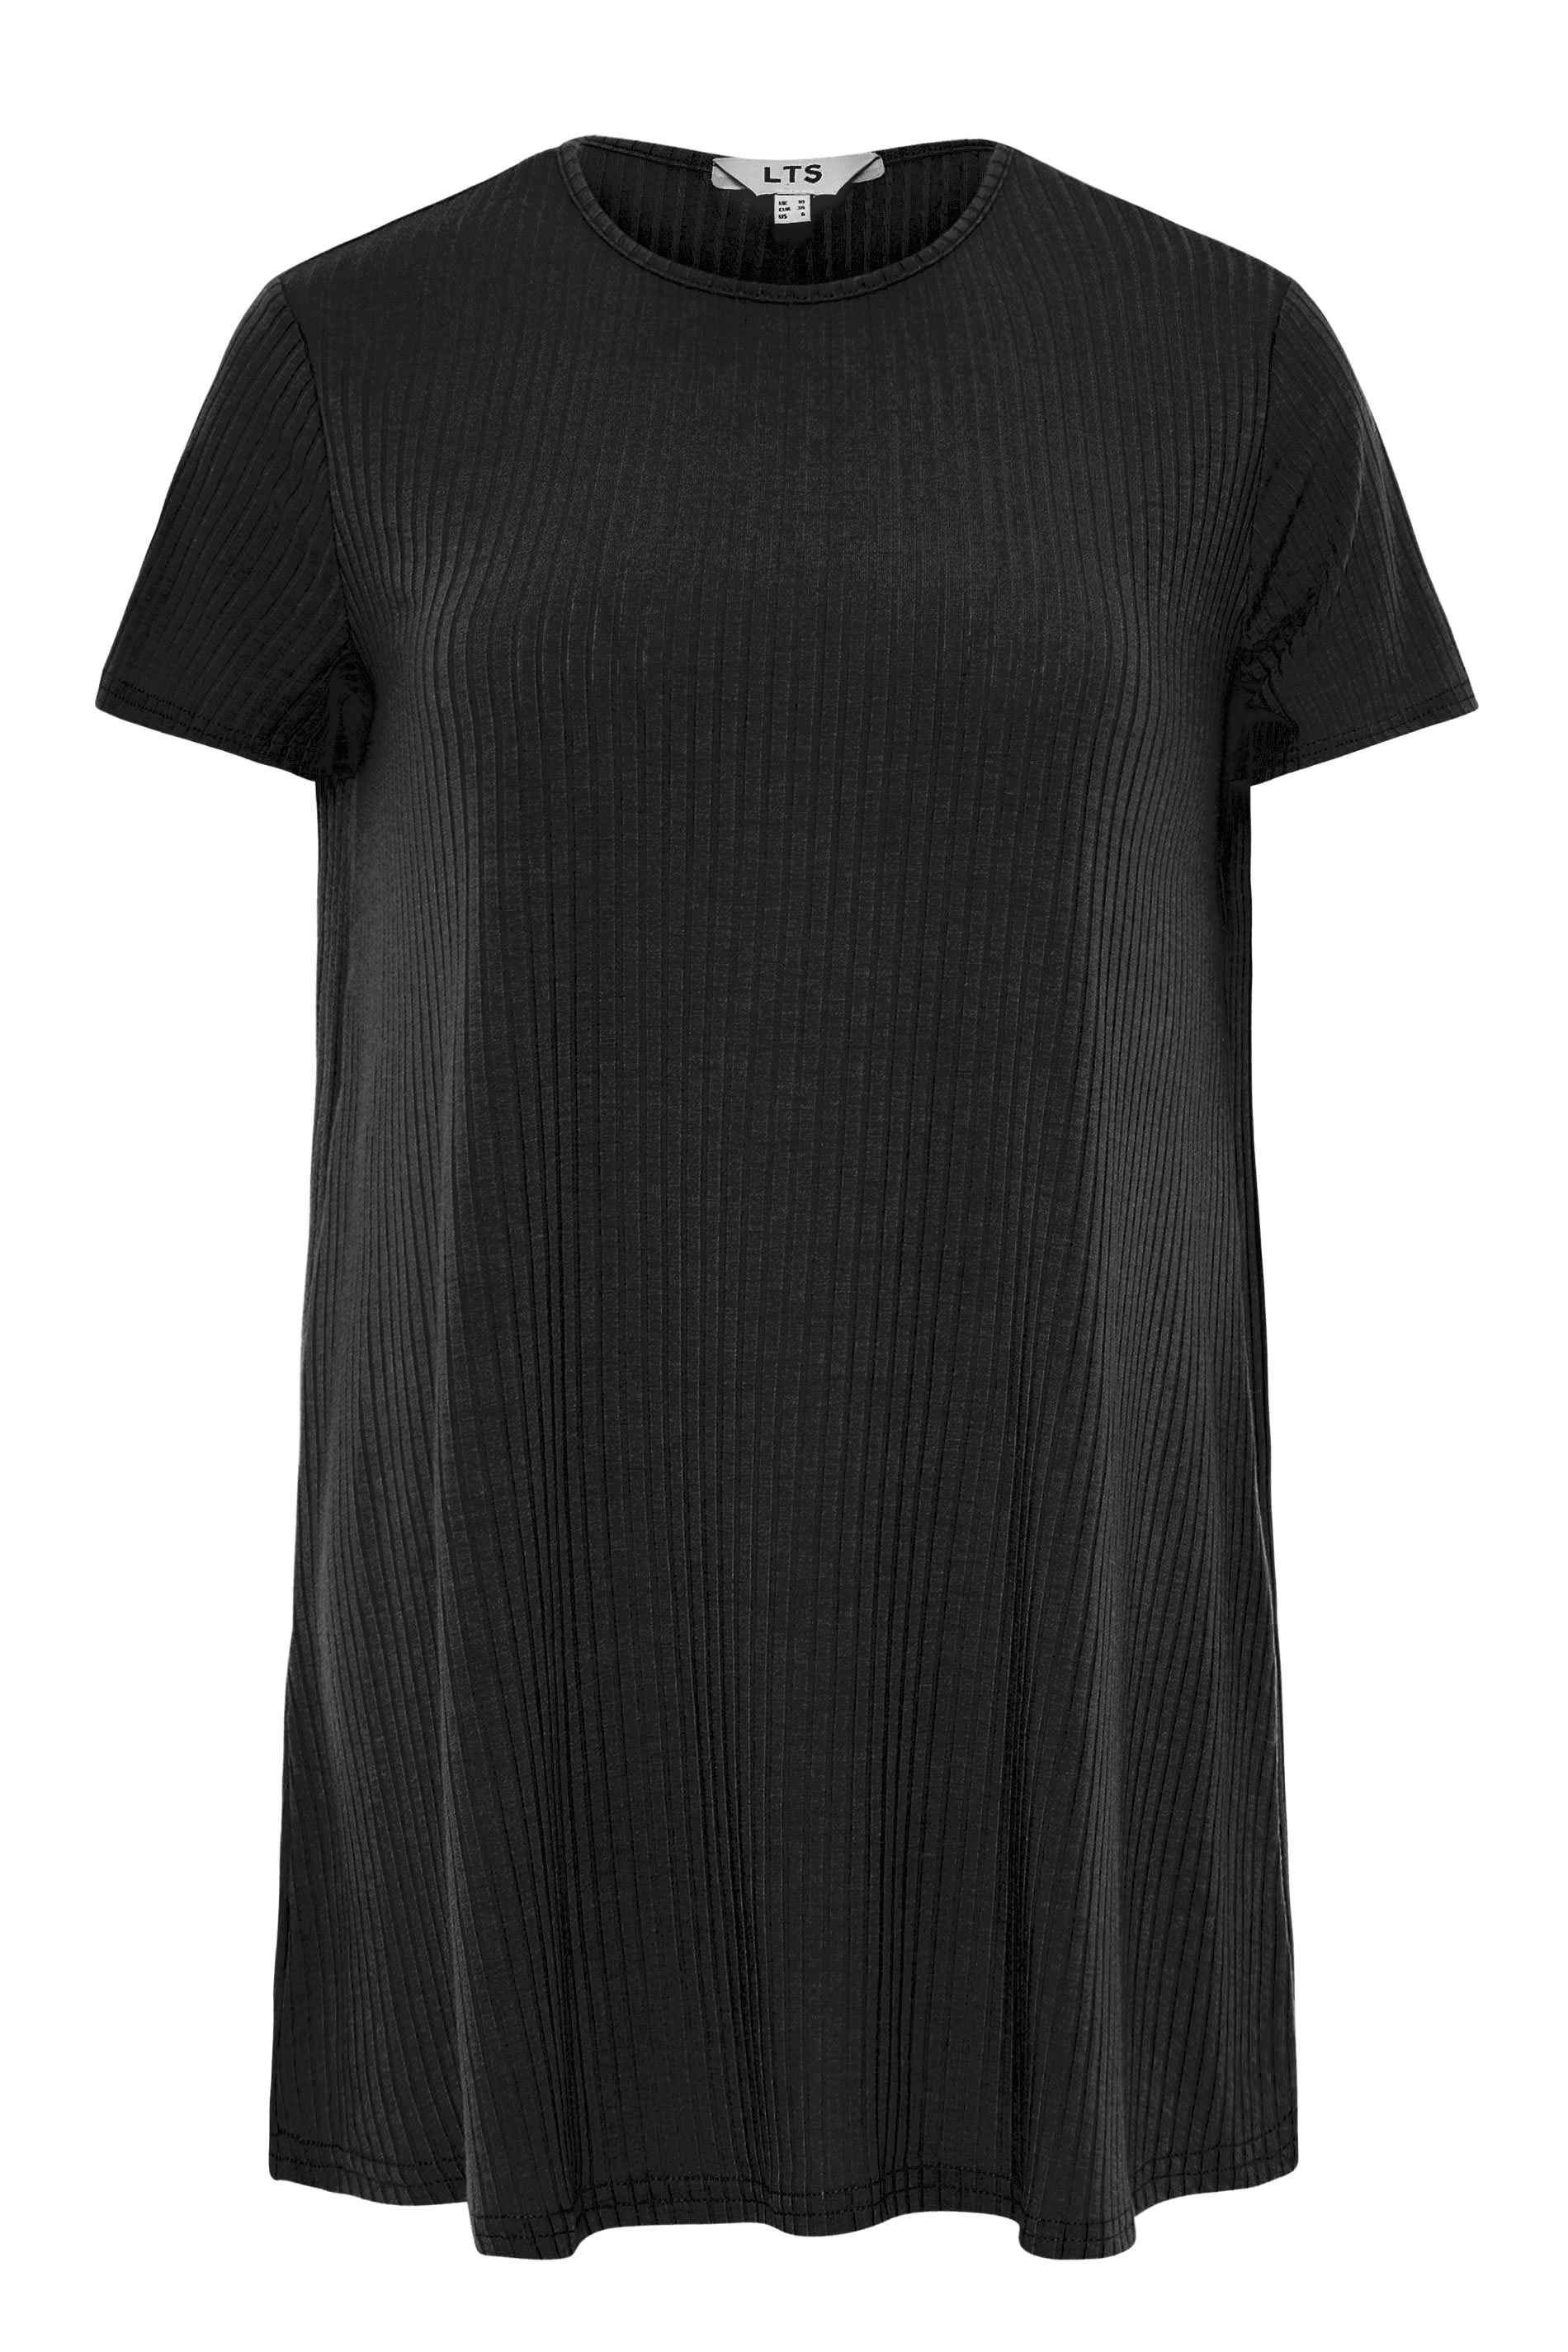 LTS Black Rib Oversized T-shirt | Long Tall Sally